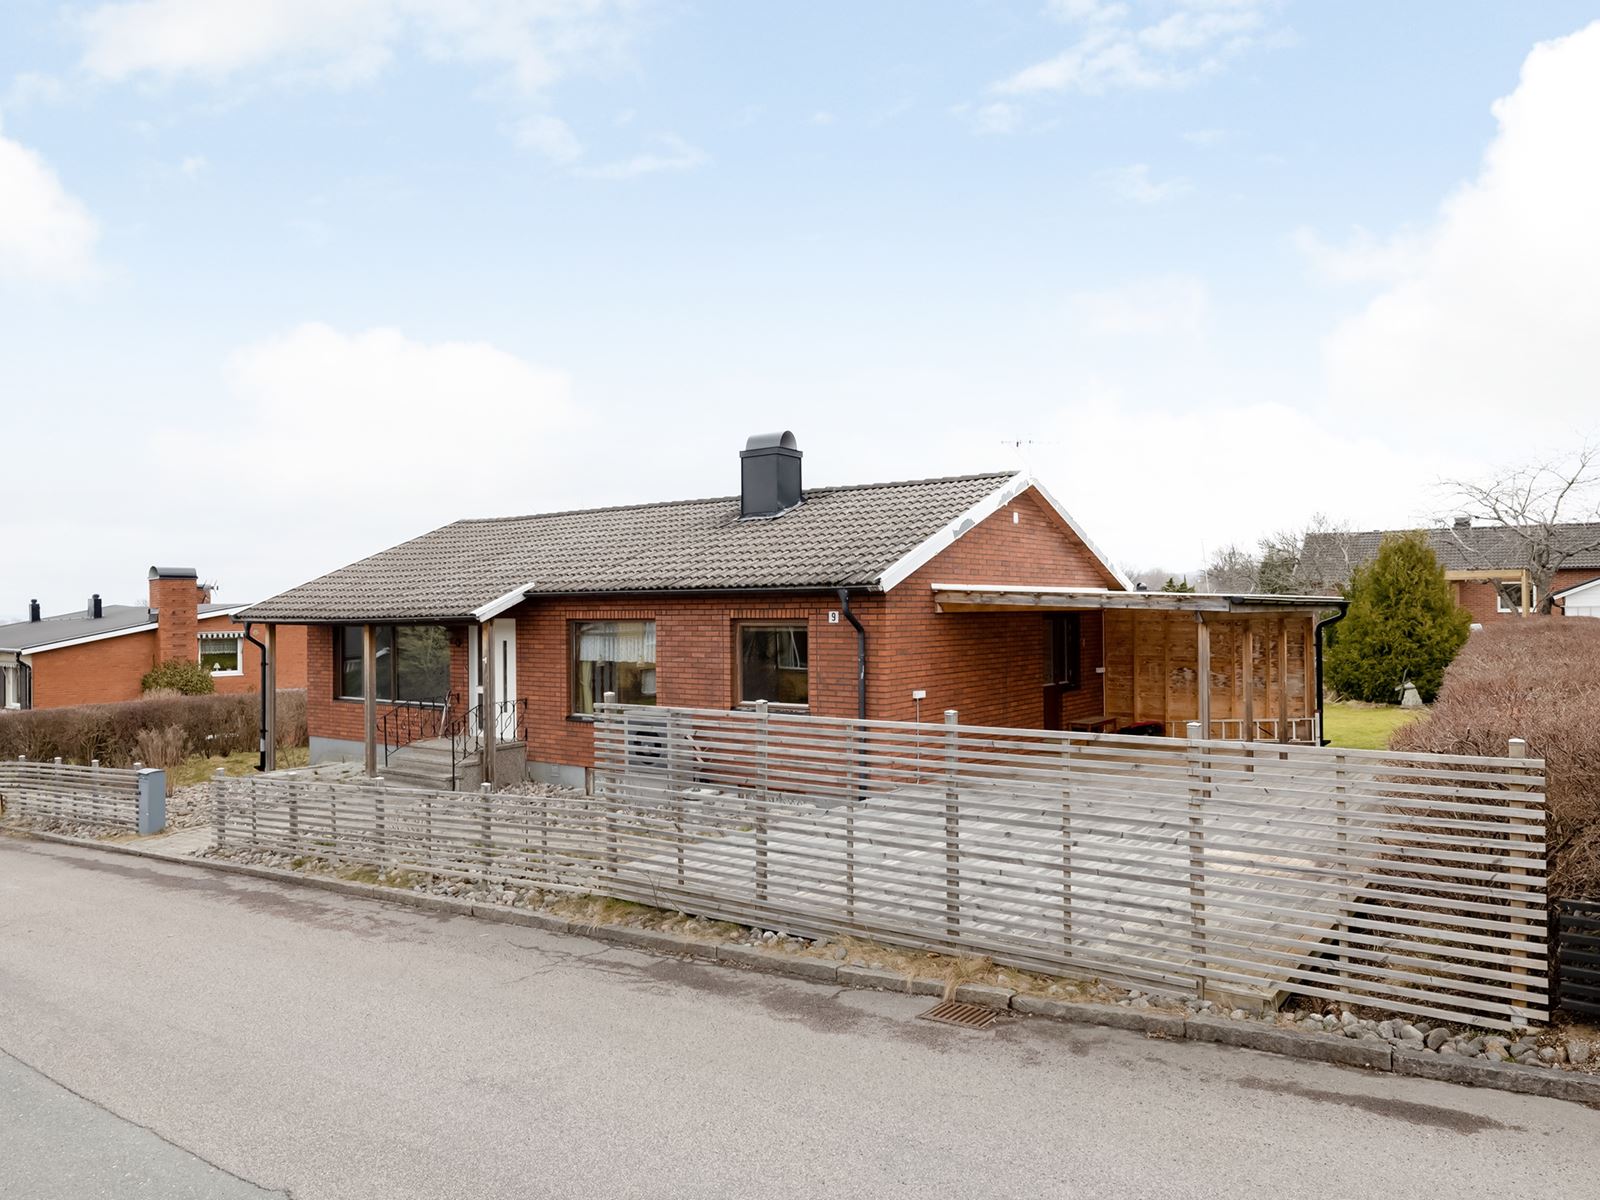 På Ekhagen och Nejlikebacken 9 presenteras en enplansvilla med källare och vind.. Nejlikebacken 9 - Bjurfors